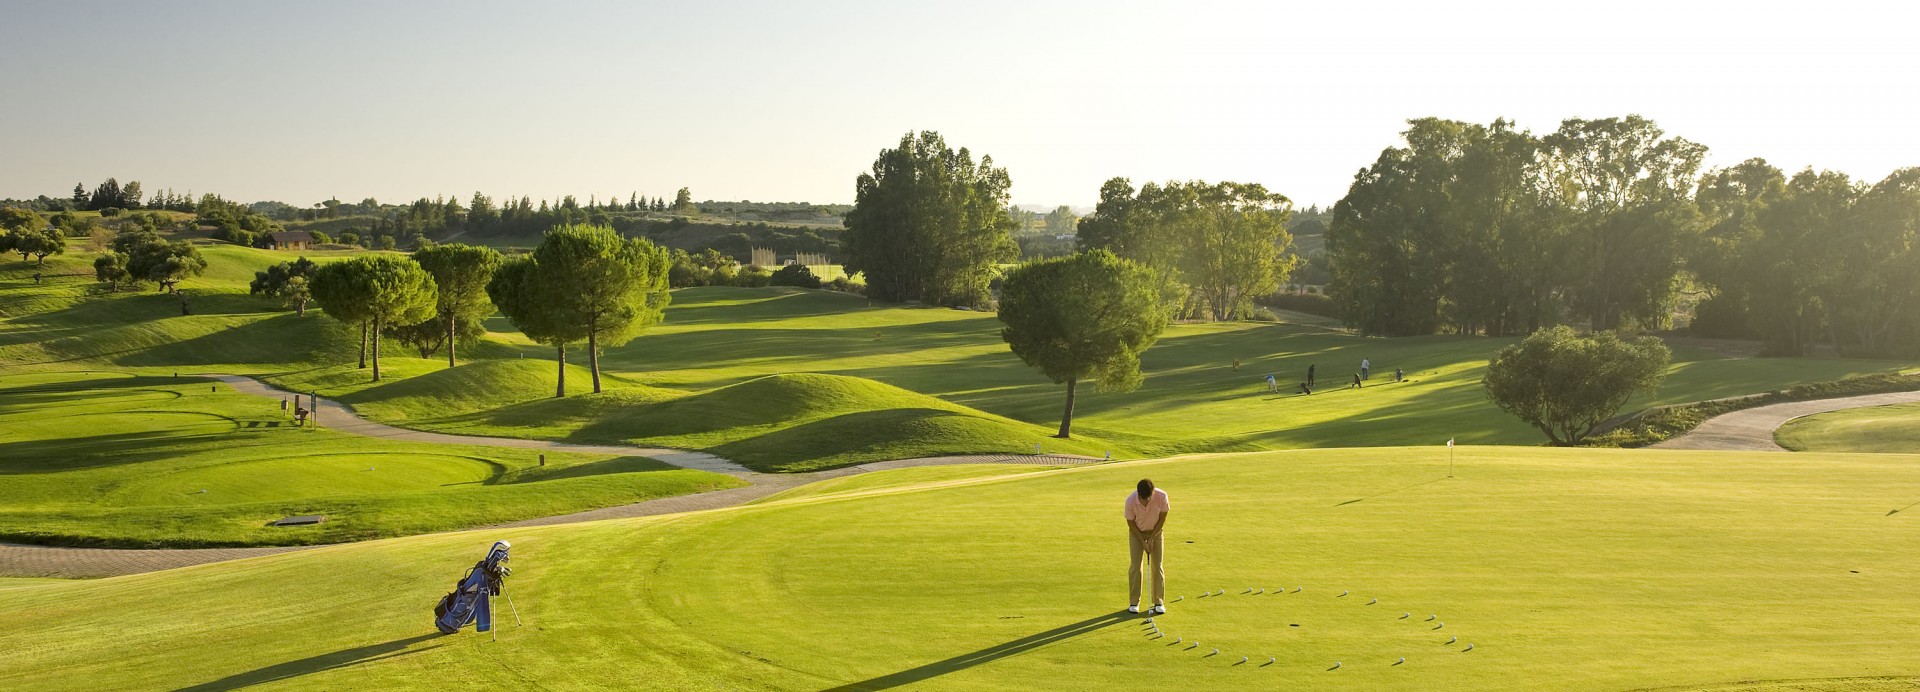 Montecastillo Golf  | Golfové zájezdy, golfová dovolená, luxusní golf